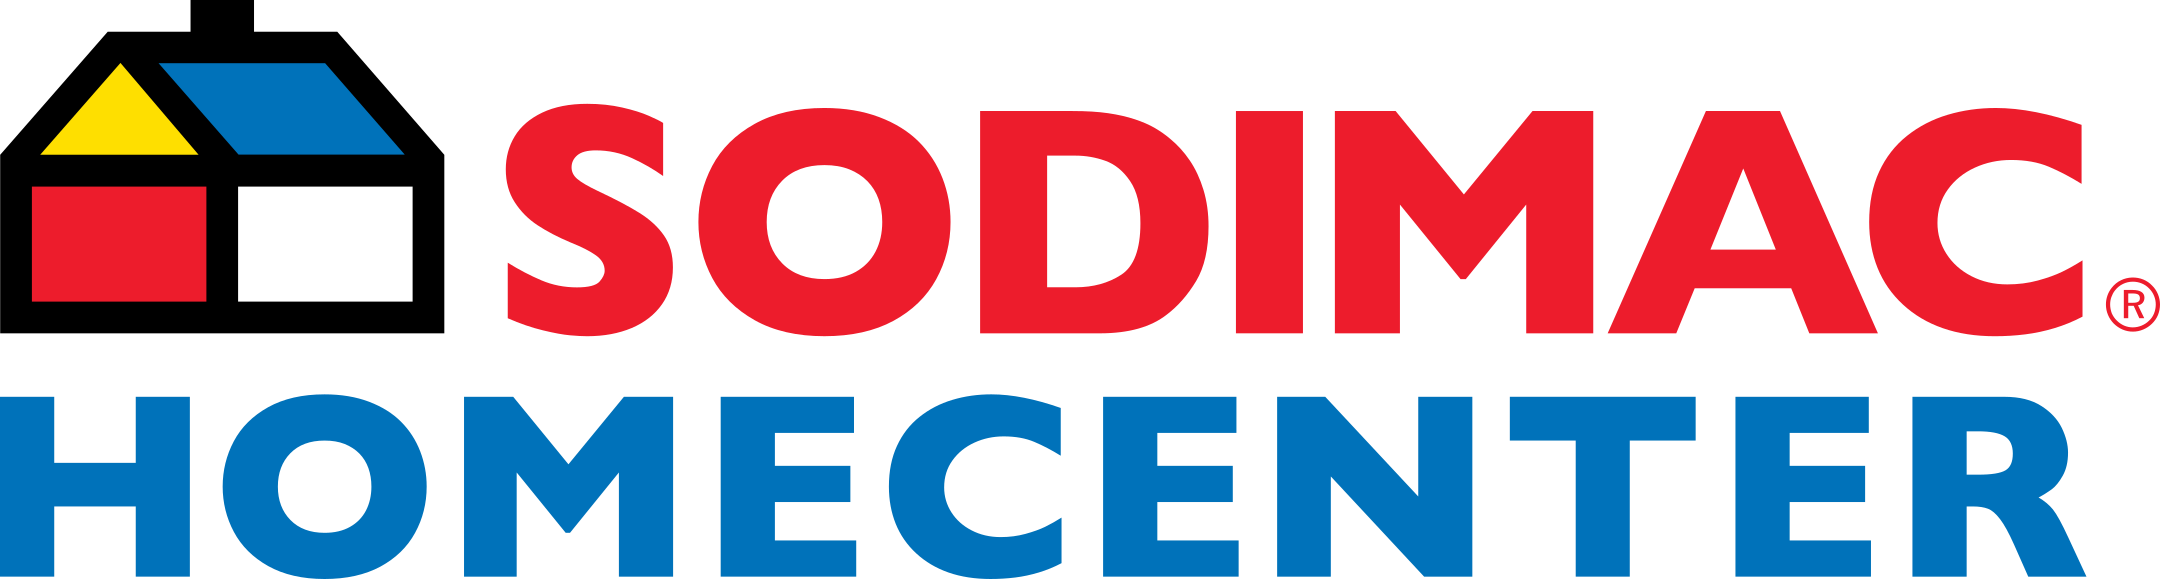 sodimac homecenter logo 1 - Sodimac HomeCenter Logo